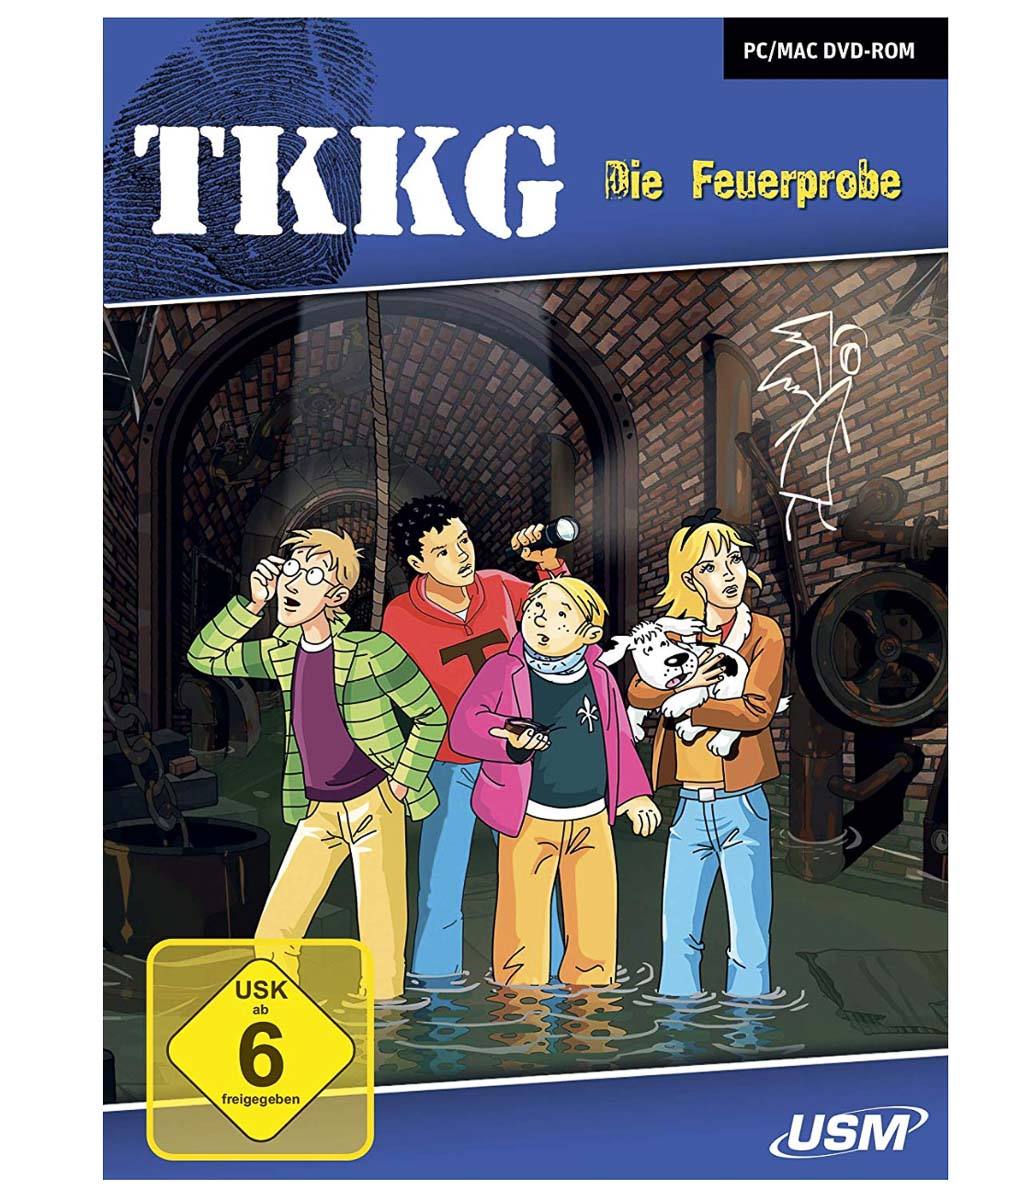 Featured image for “TKKG – Die Feuerprobe (USM)”